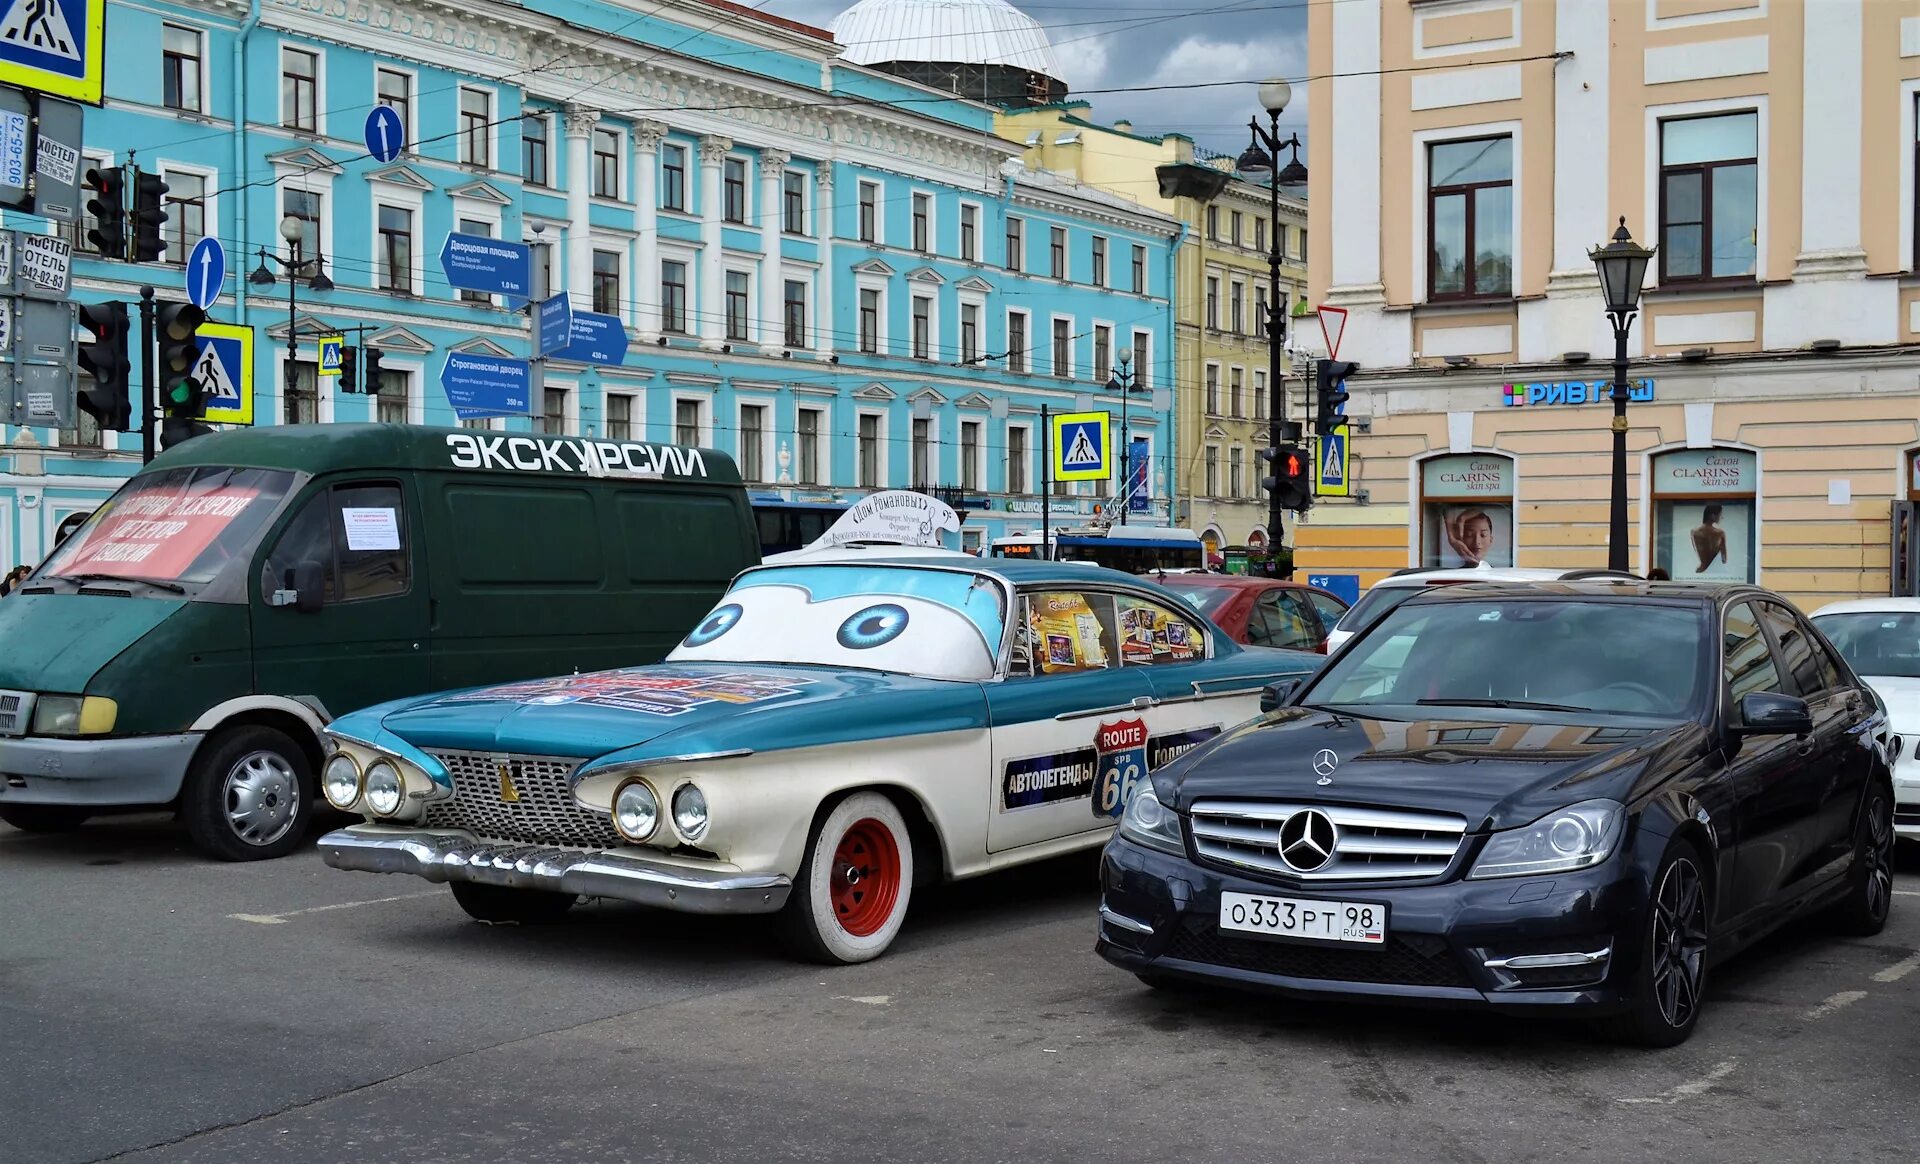 Купить автомобиль в спб. Машины в Питере. Петербургские автомобили. Крутые машины в Питере. Питер из машины.